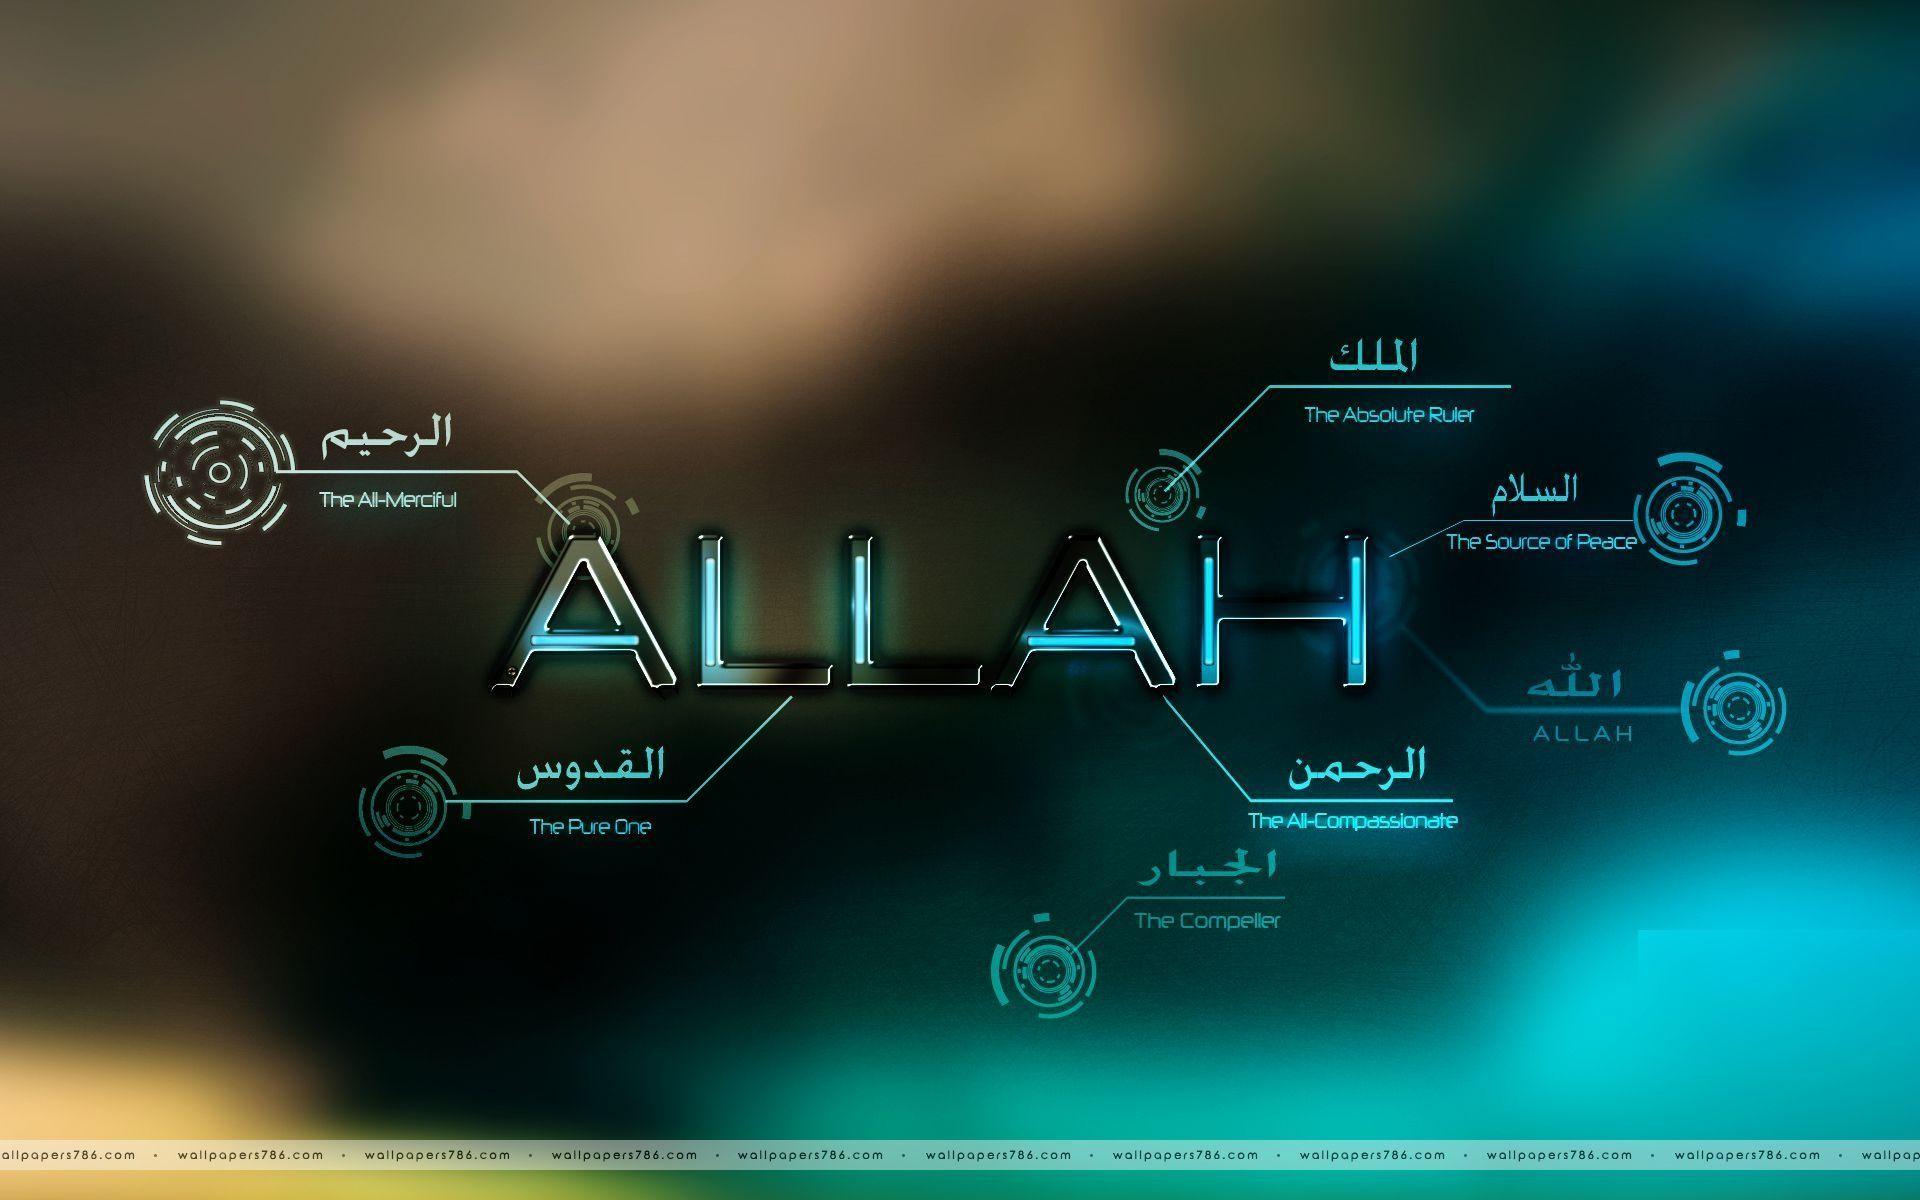 Allah Desktop Wallpapers Wallpaper Cave